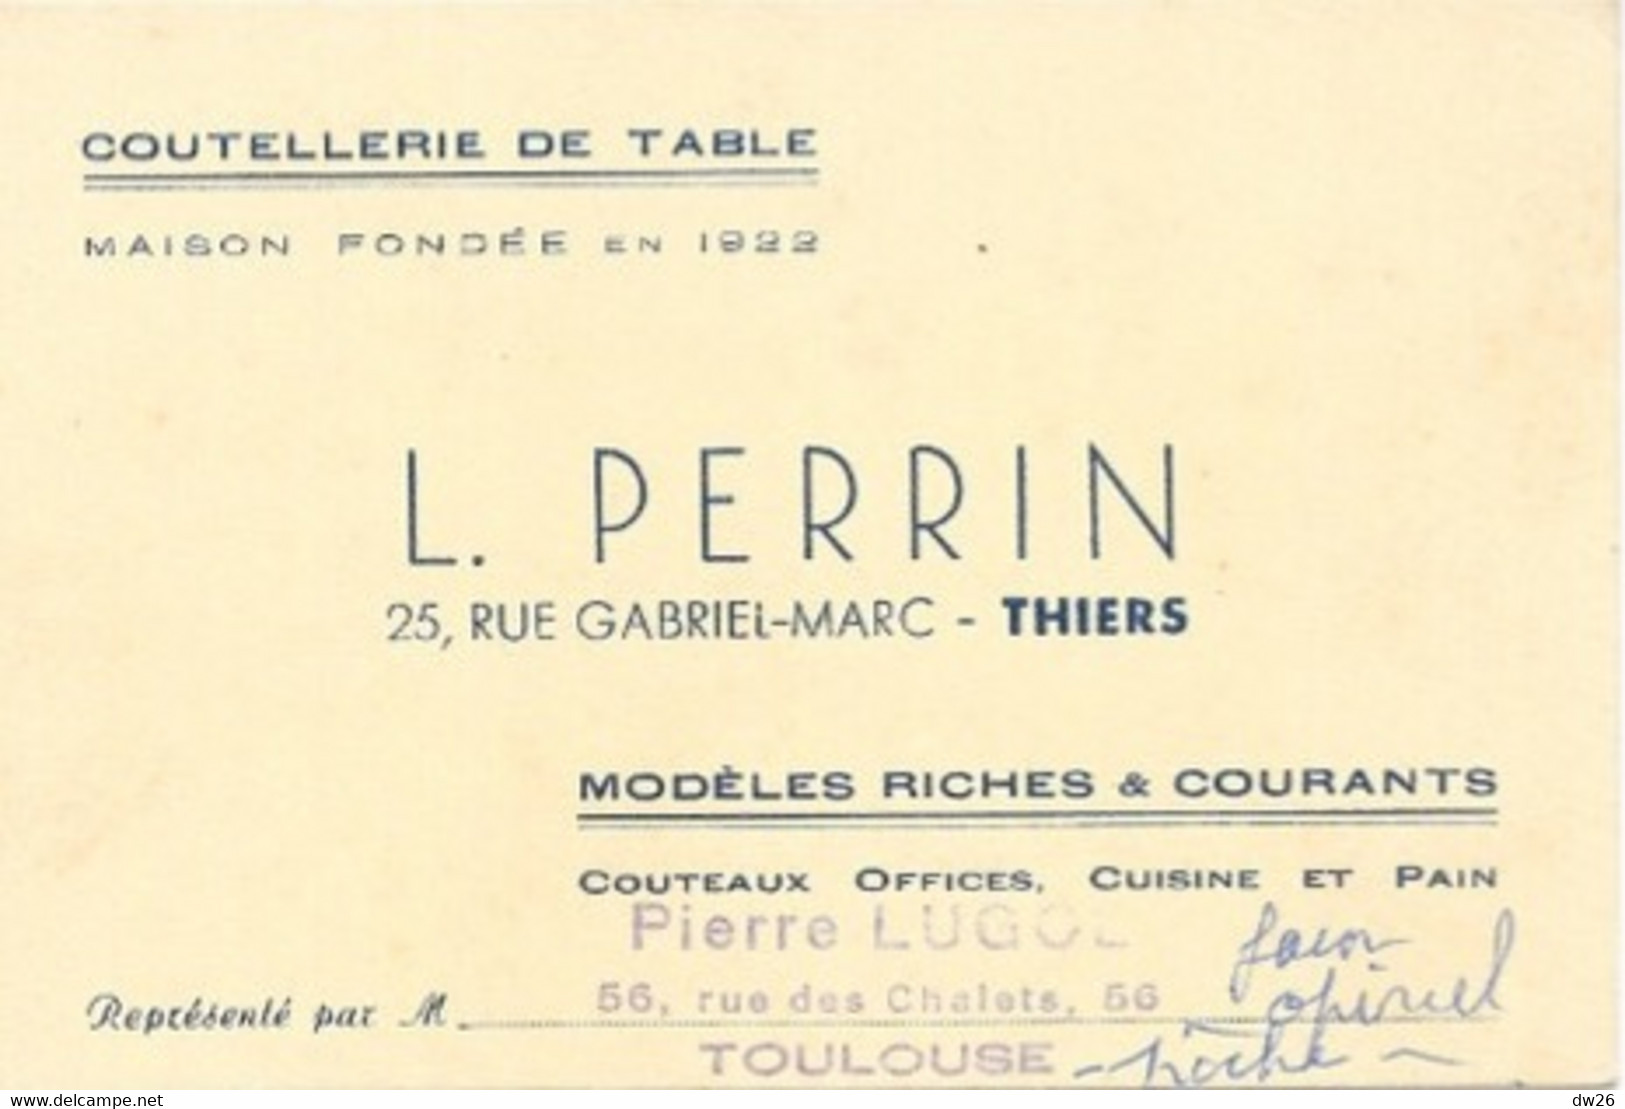 Carte De Visite - Coutellerie De Table L. Perrin, Thiers (couteaux Office, Cuisine) Représentant: Pierre Lugol - Visiting Cards